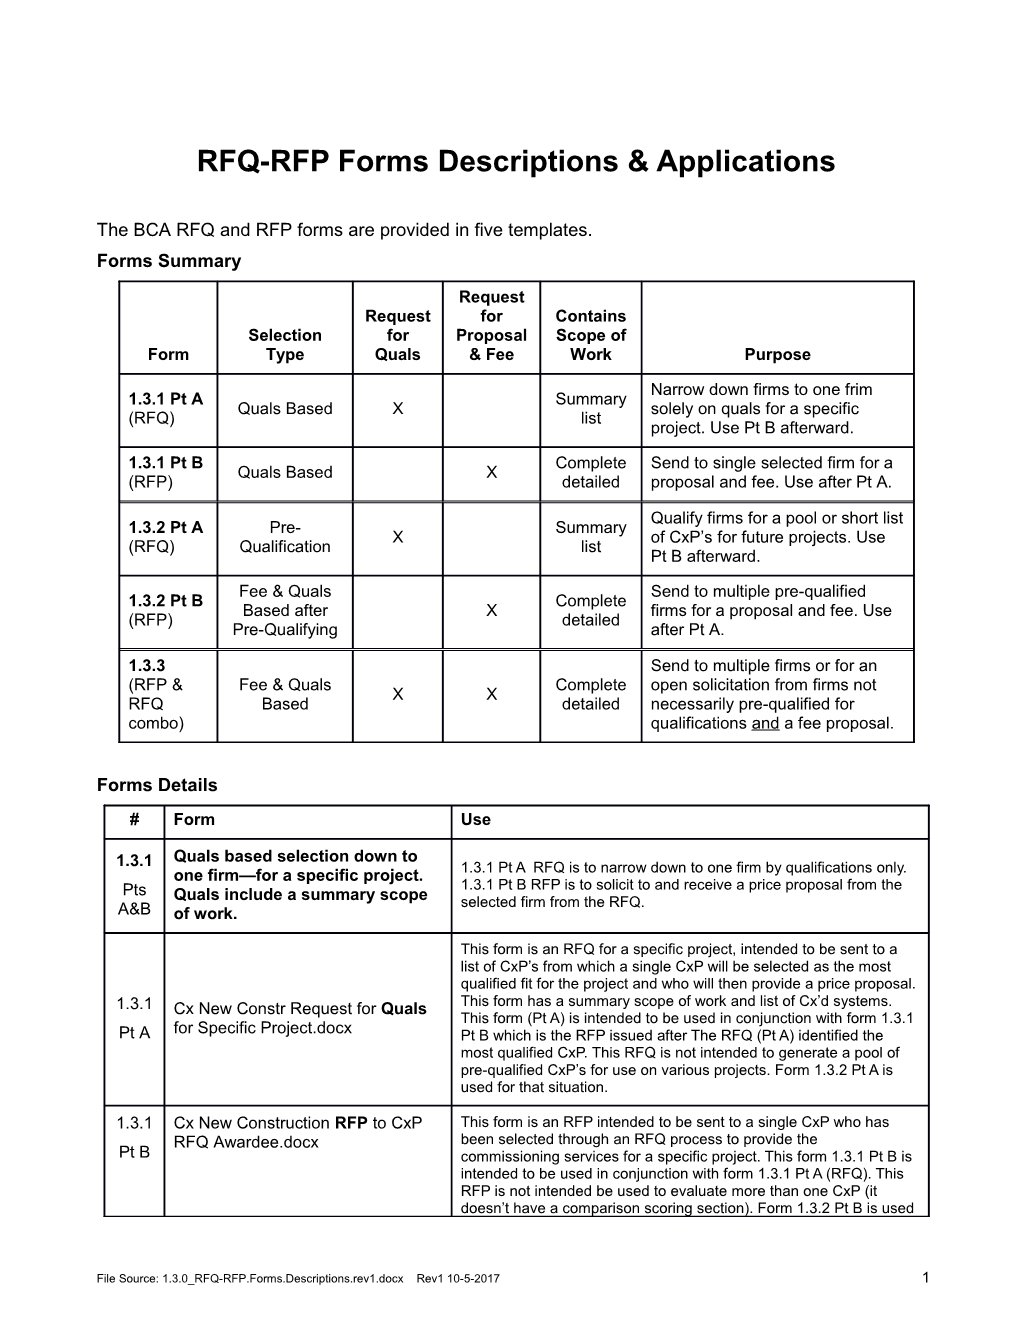 RFQ-RFP Forms Descriptionsapplications